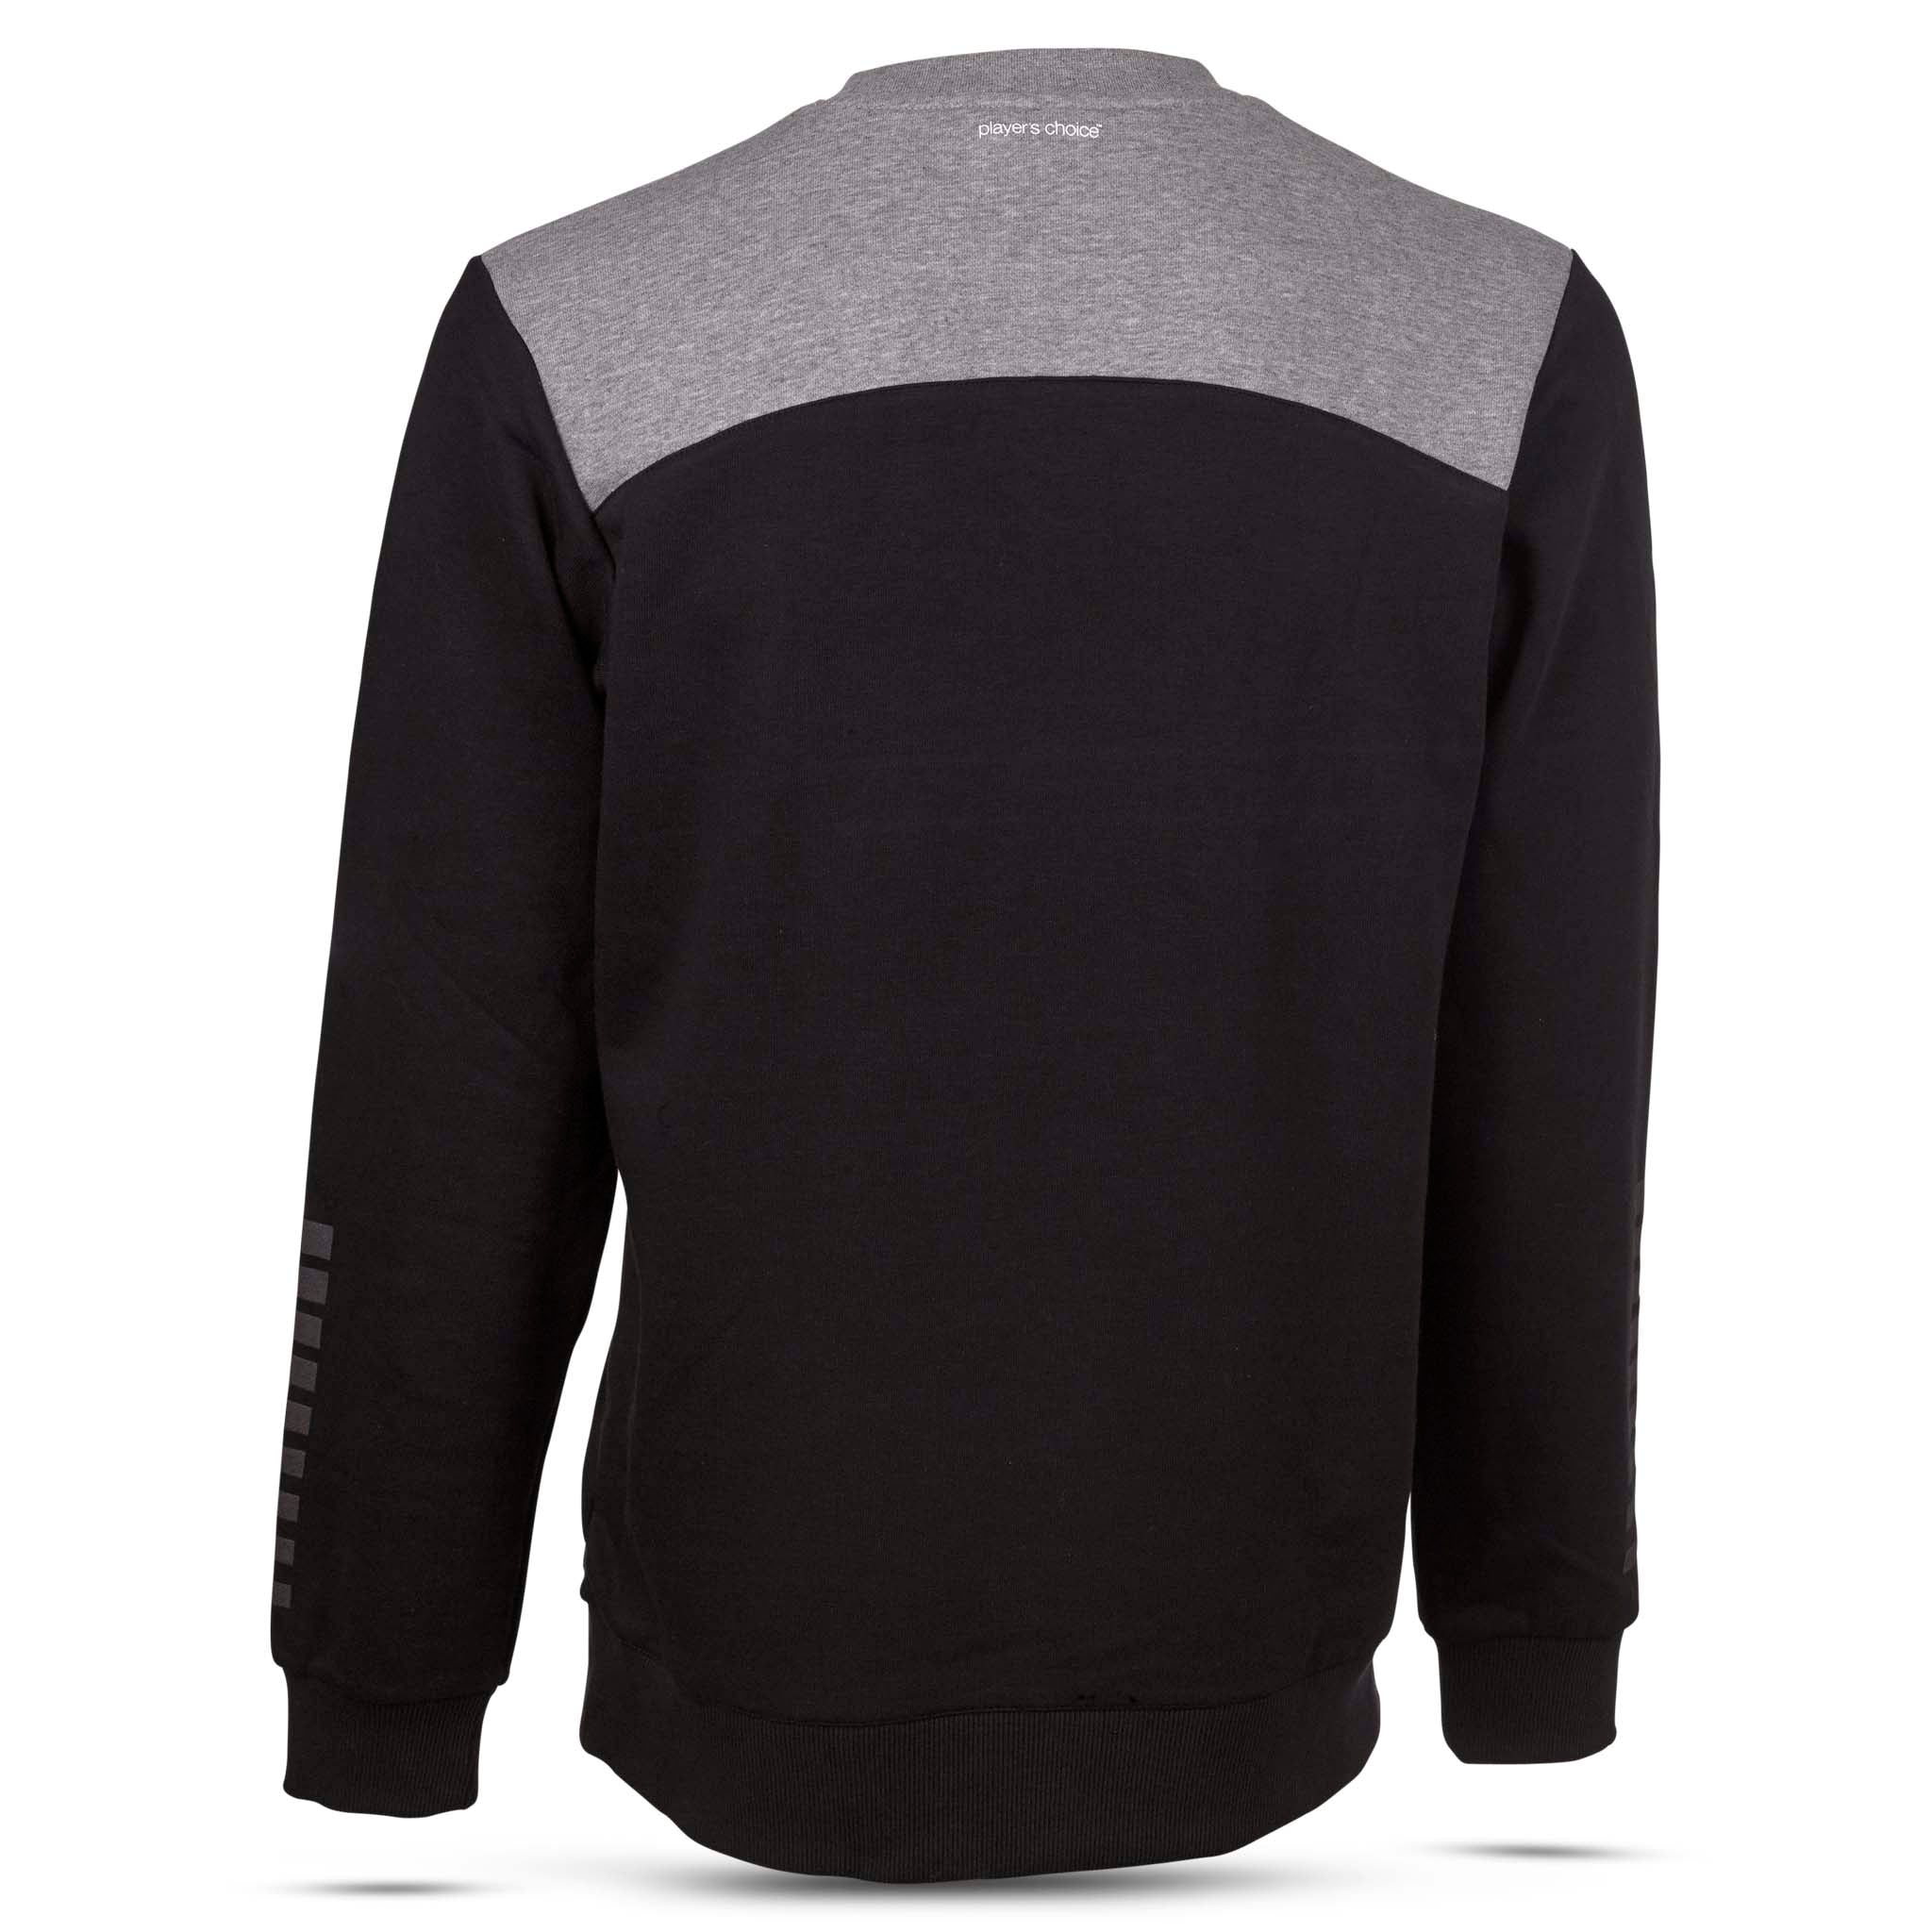 Oxford Sweatshirt - Barn #färg_svart/grå